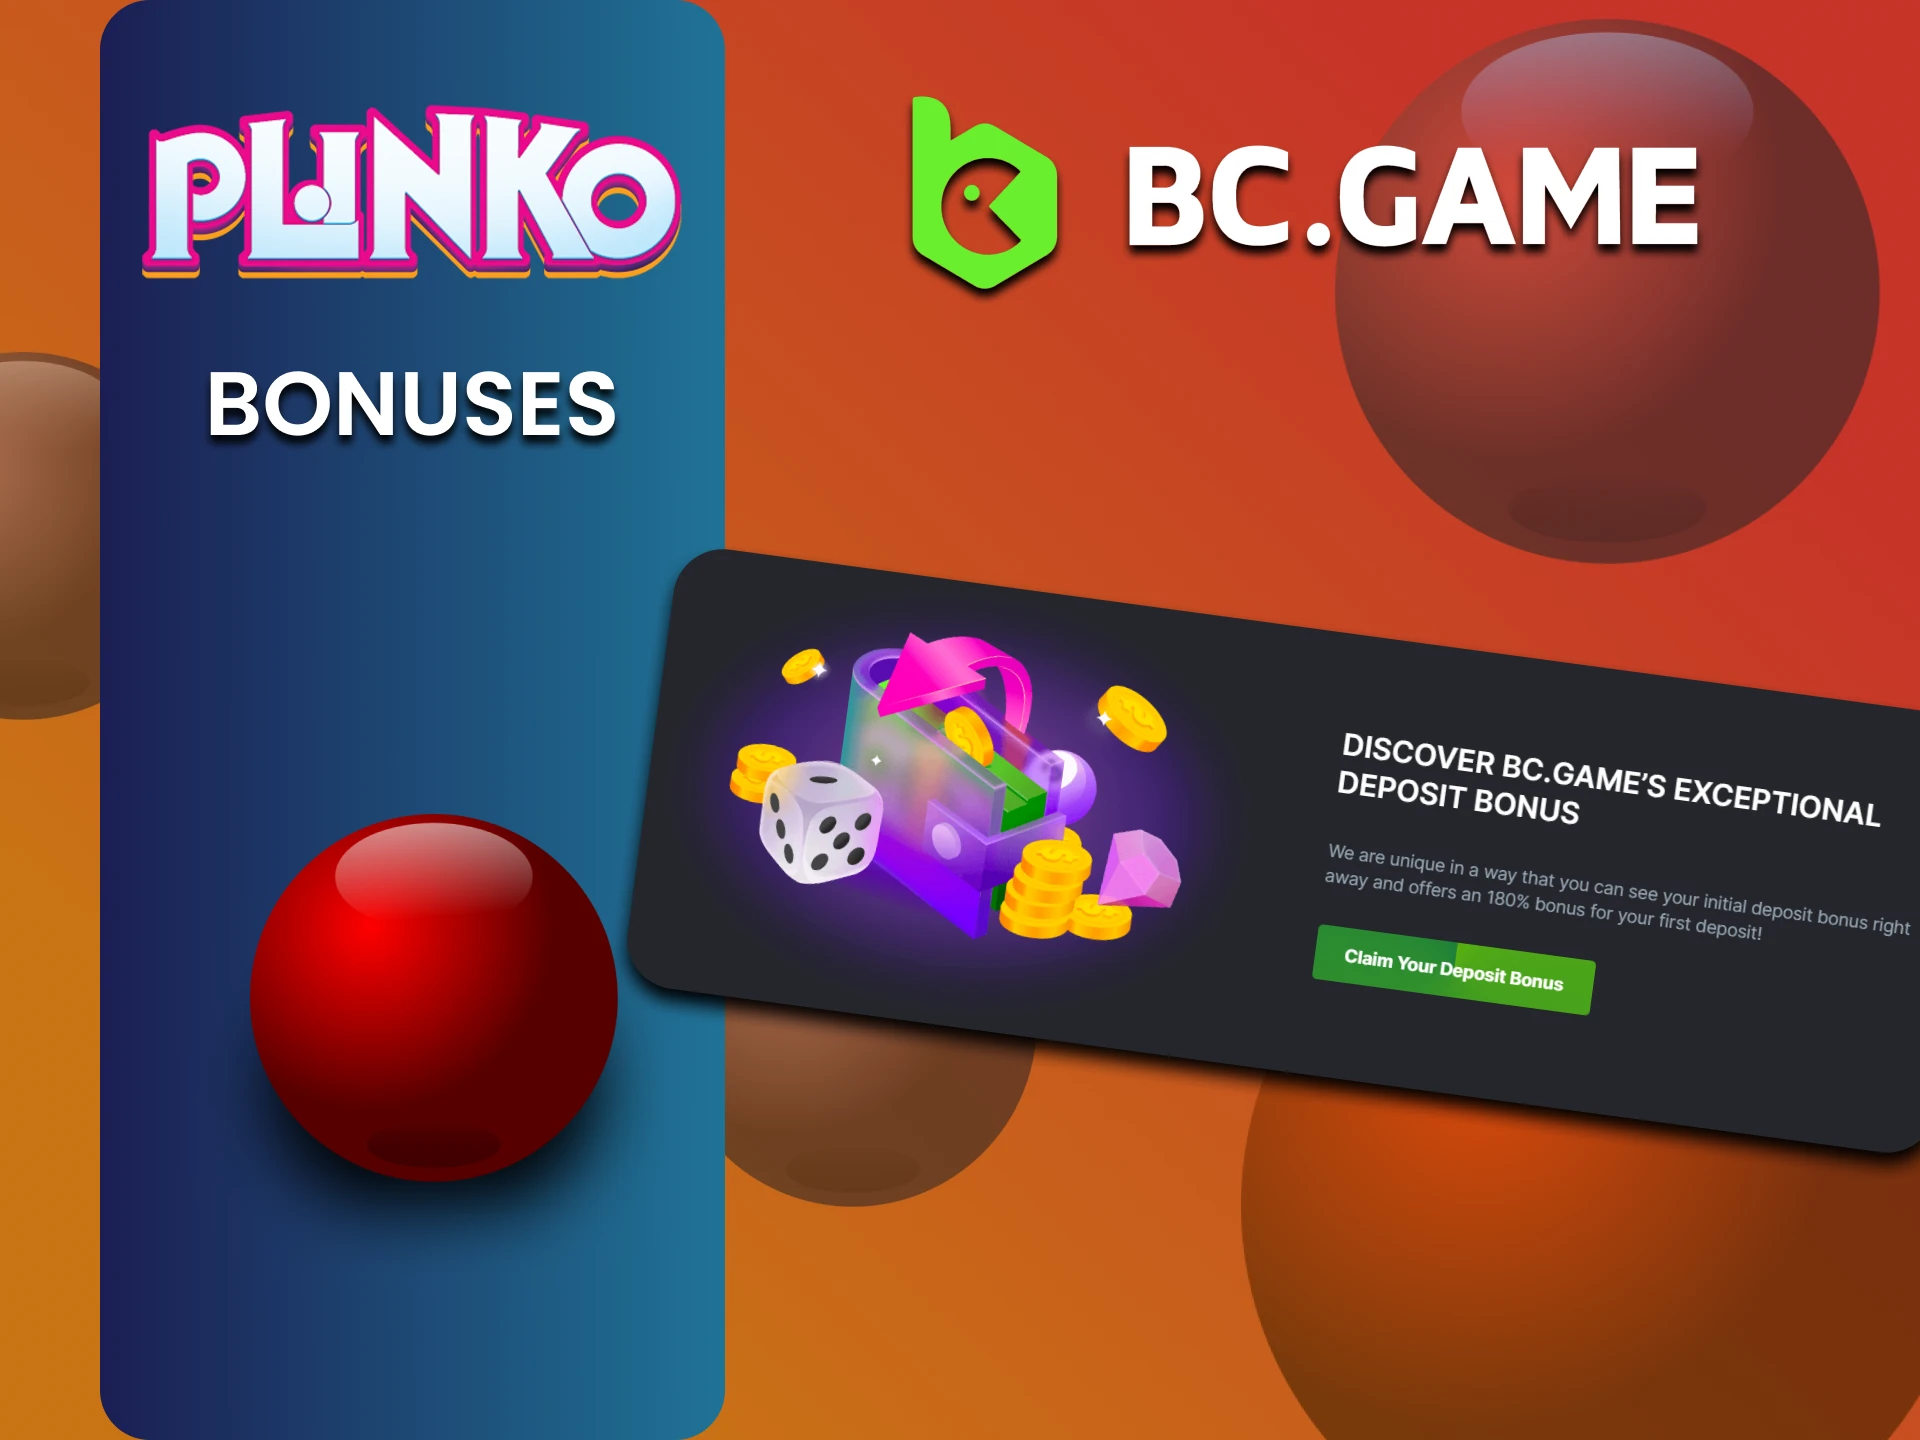 BCGame gives bonuses for playing Plinko.